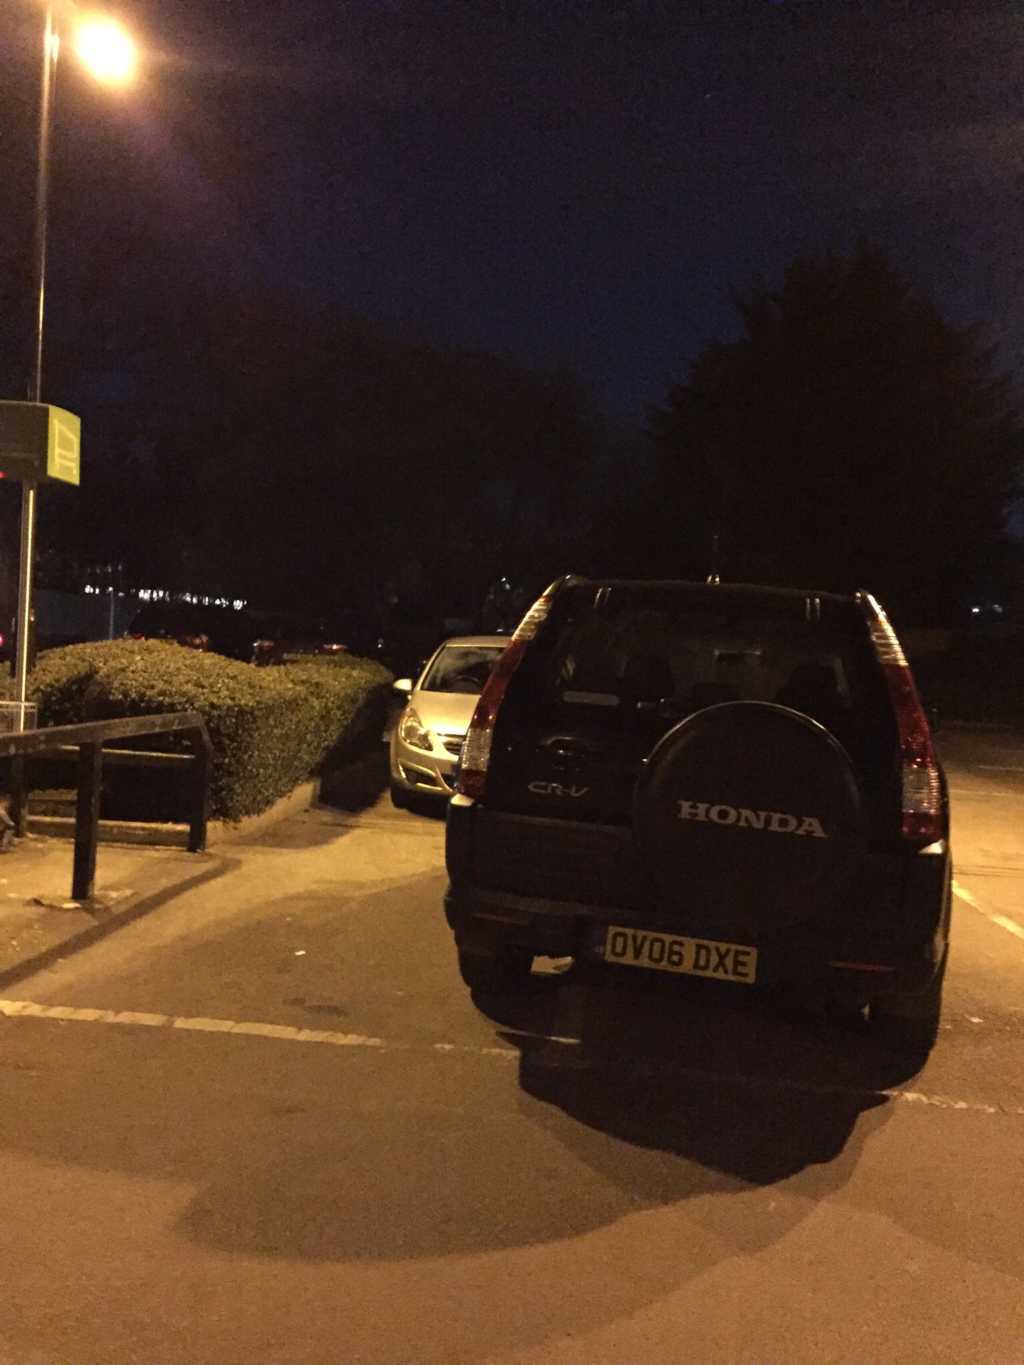 OV06 DXE displaying Selfish Parking